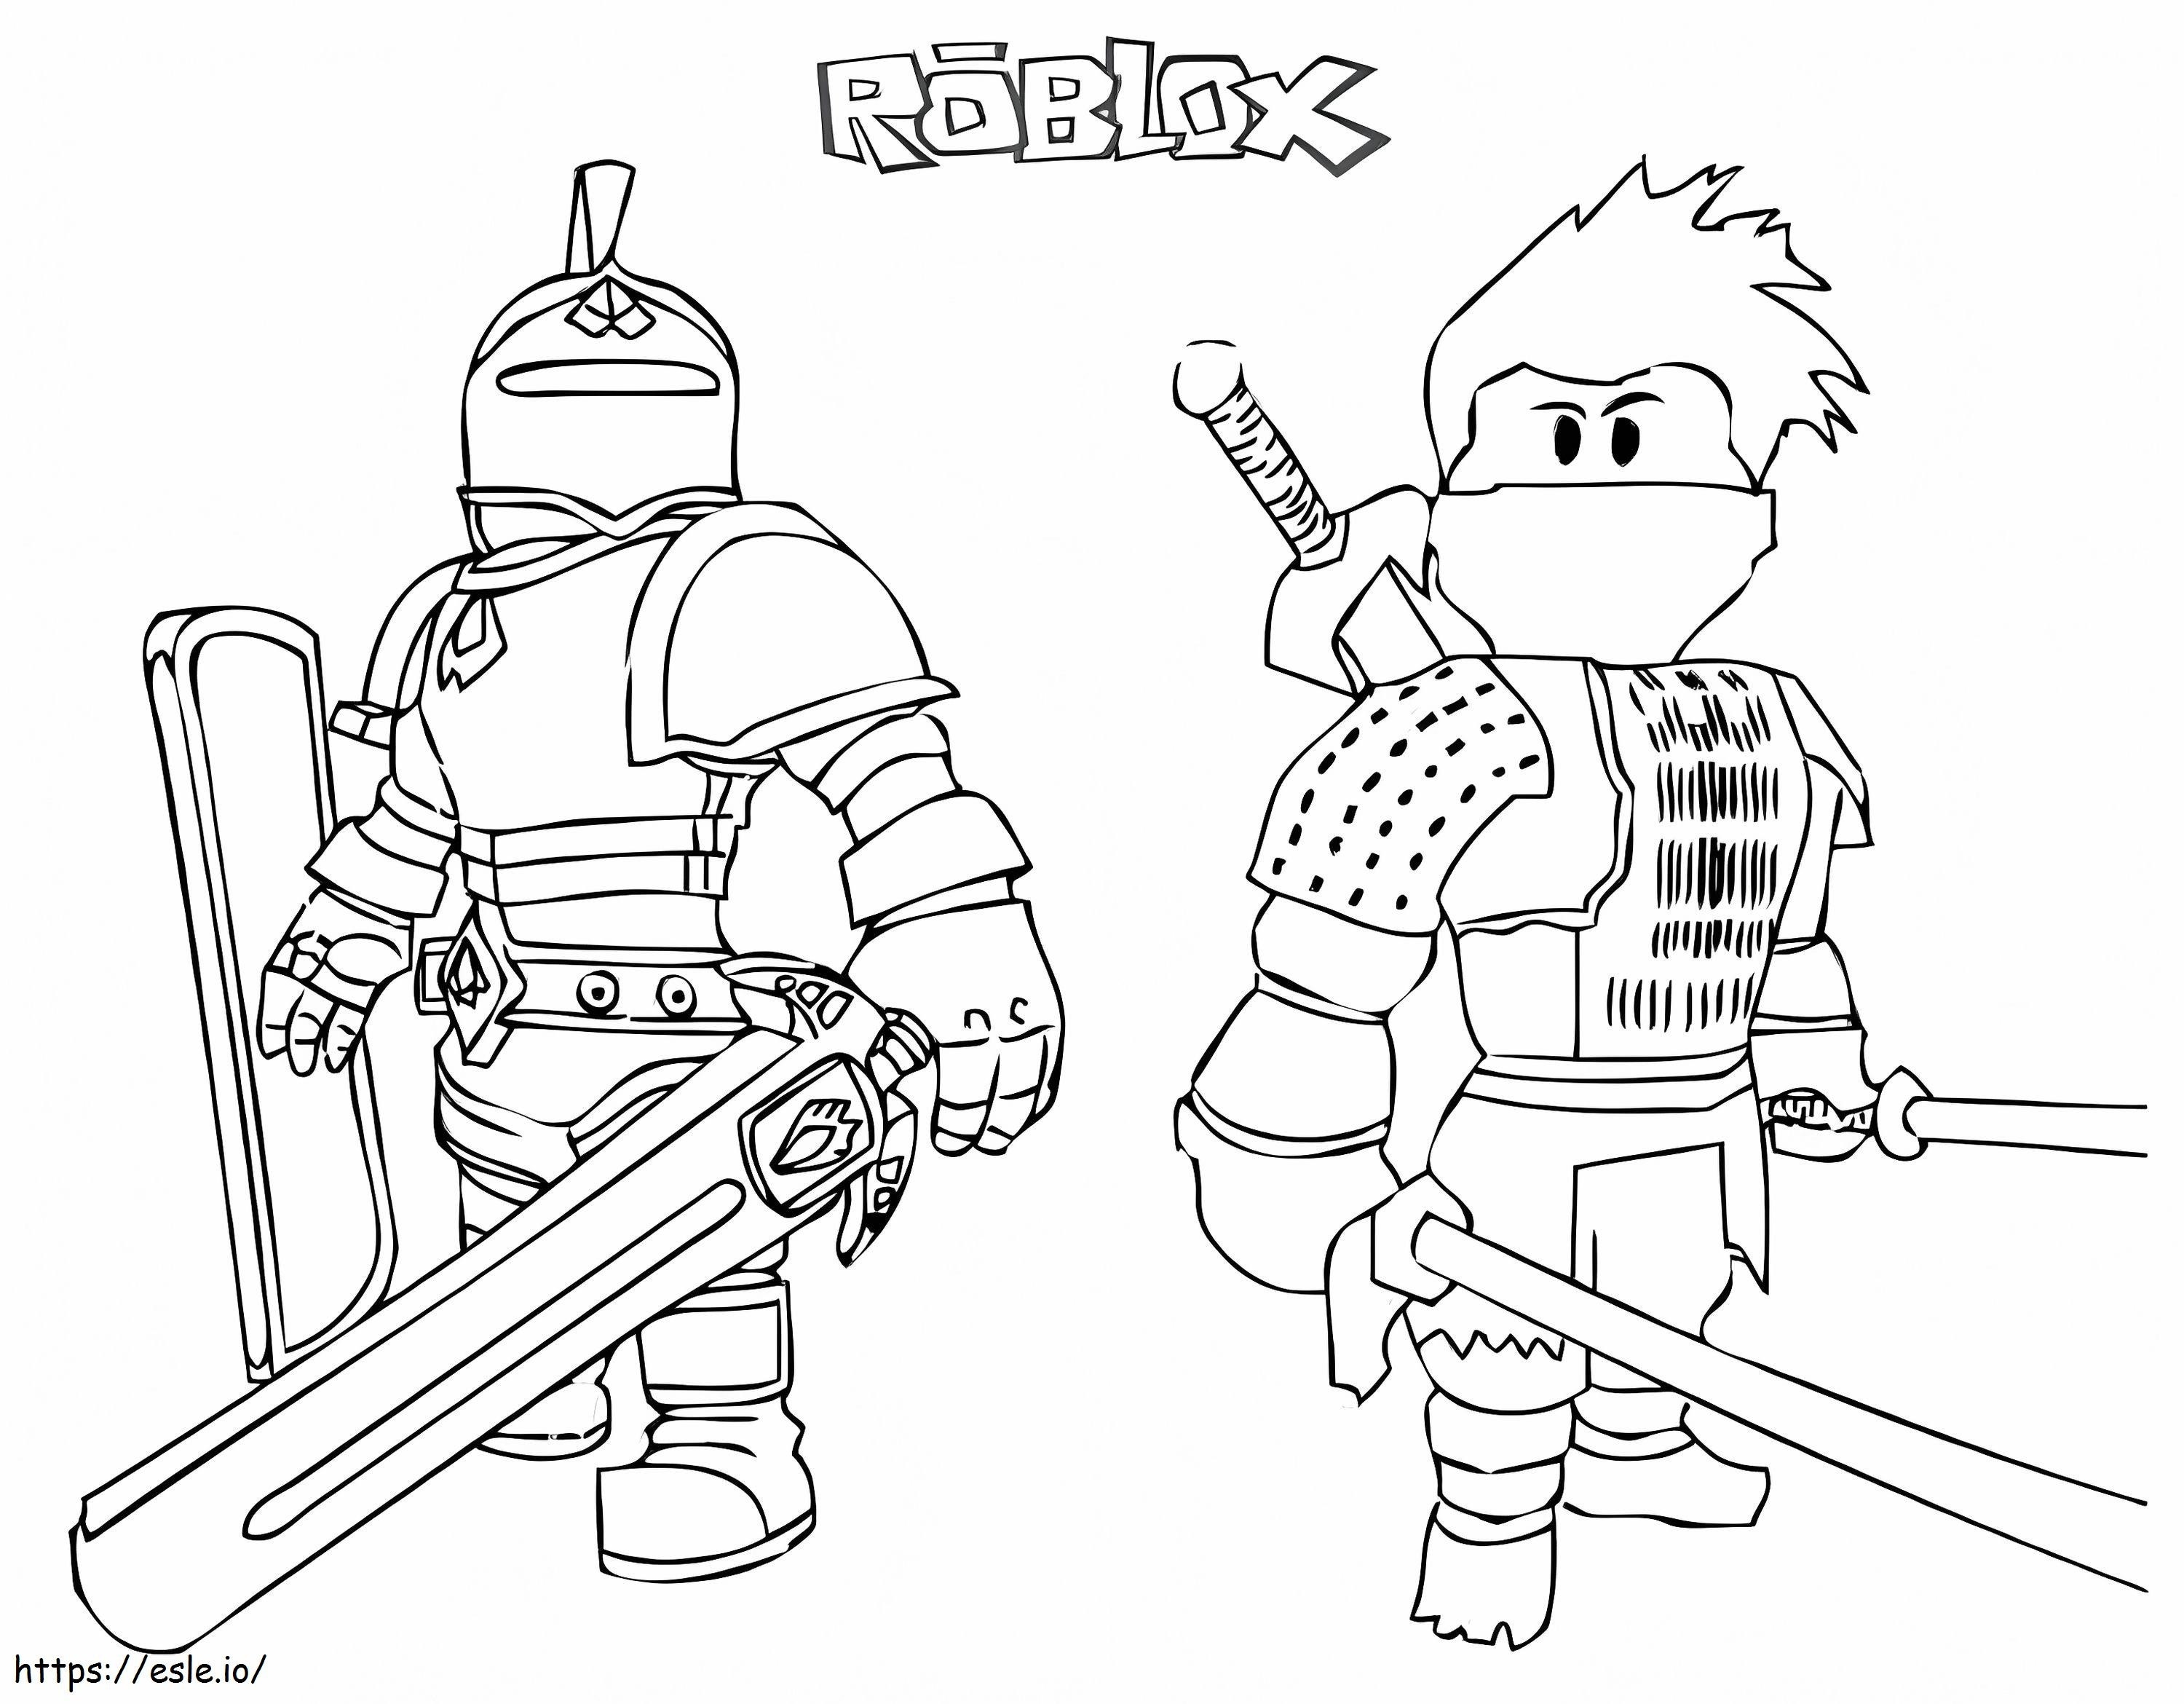 Roblox Ritter und Samurai ausmalbilder